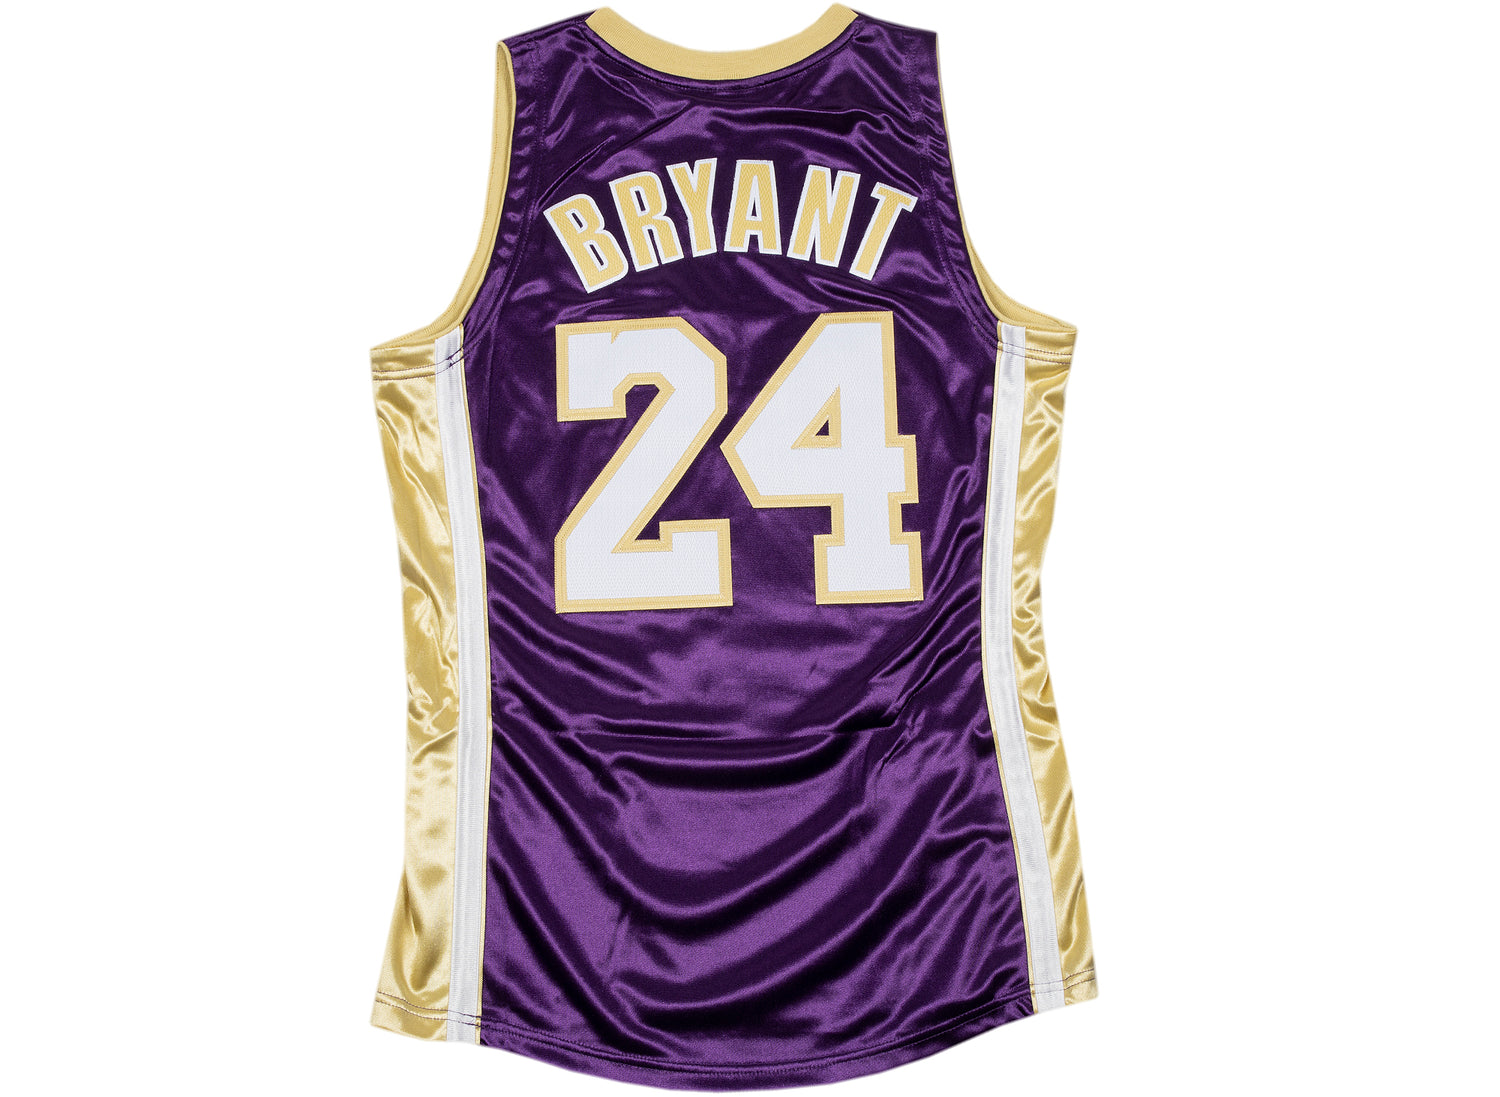 Mitchell & Ness Kobe Bryant HOF NBA Reversible Jersey Purple/Gold